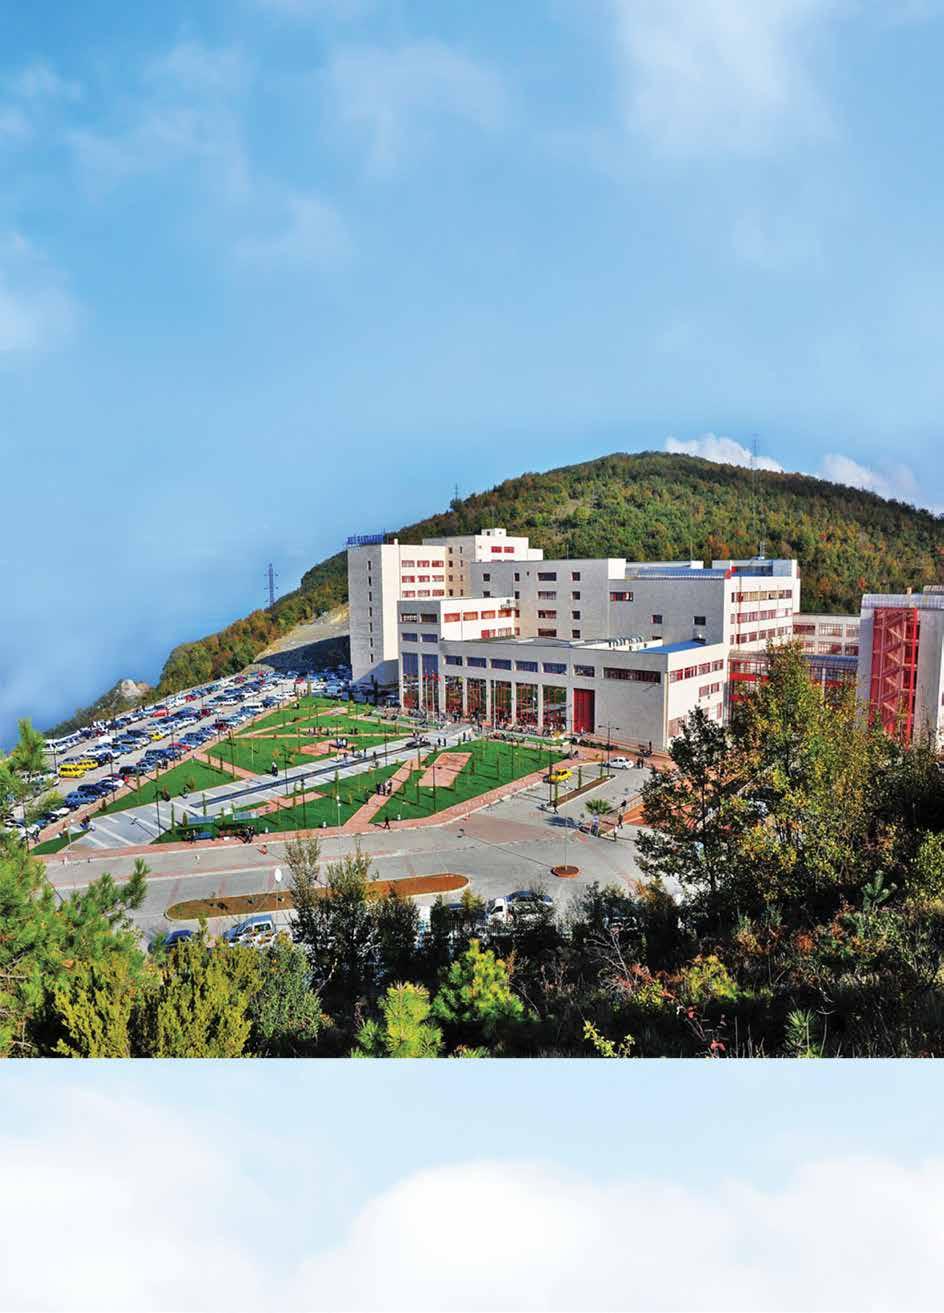 Bülent Ecevit Üniversitesi, 13 fakülte, 3 enstitü, 5 yüksekokul, 7 meslek yüksekokulu, 1 devlet konservatuvarı ve 30 araştırma merkezinden oluşan devlet üniversitesidir.